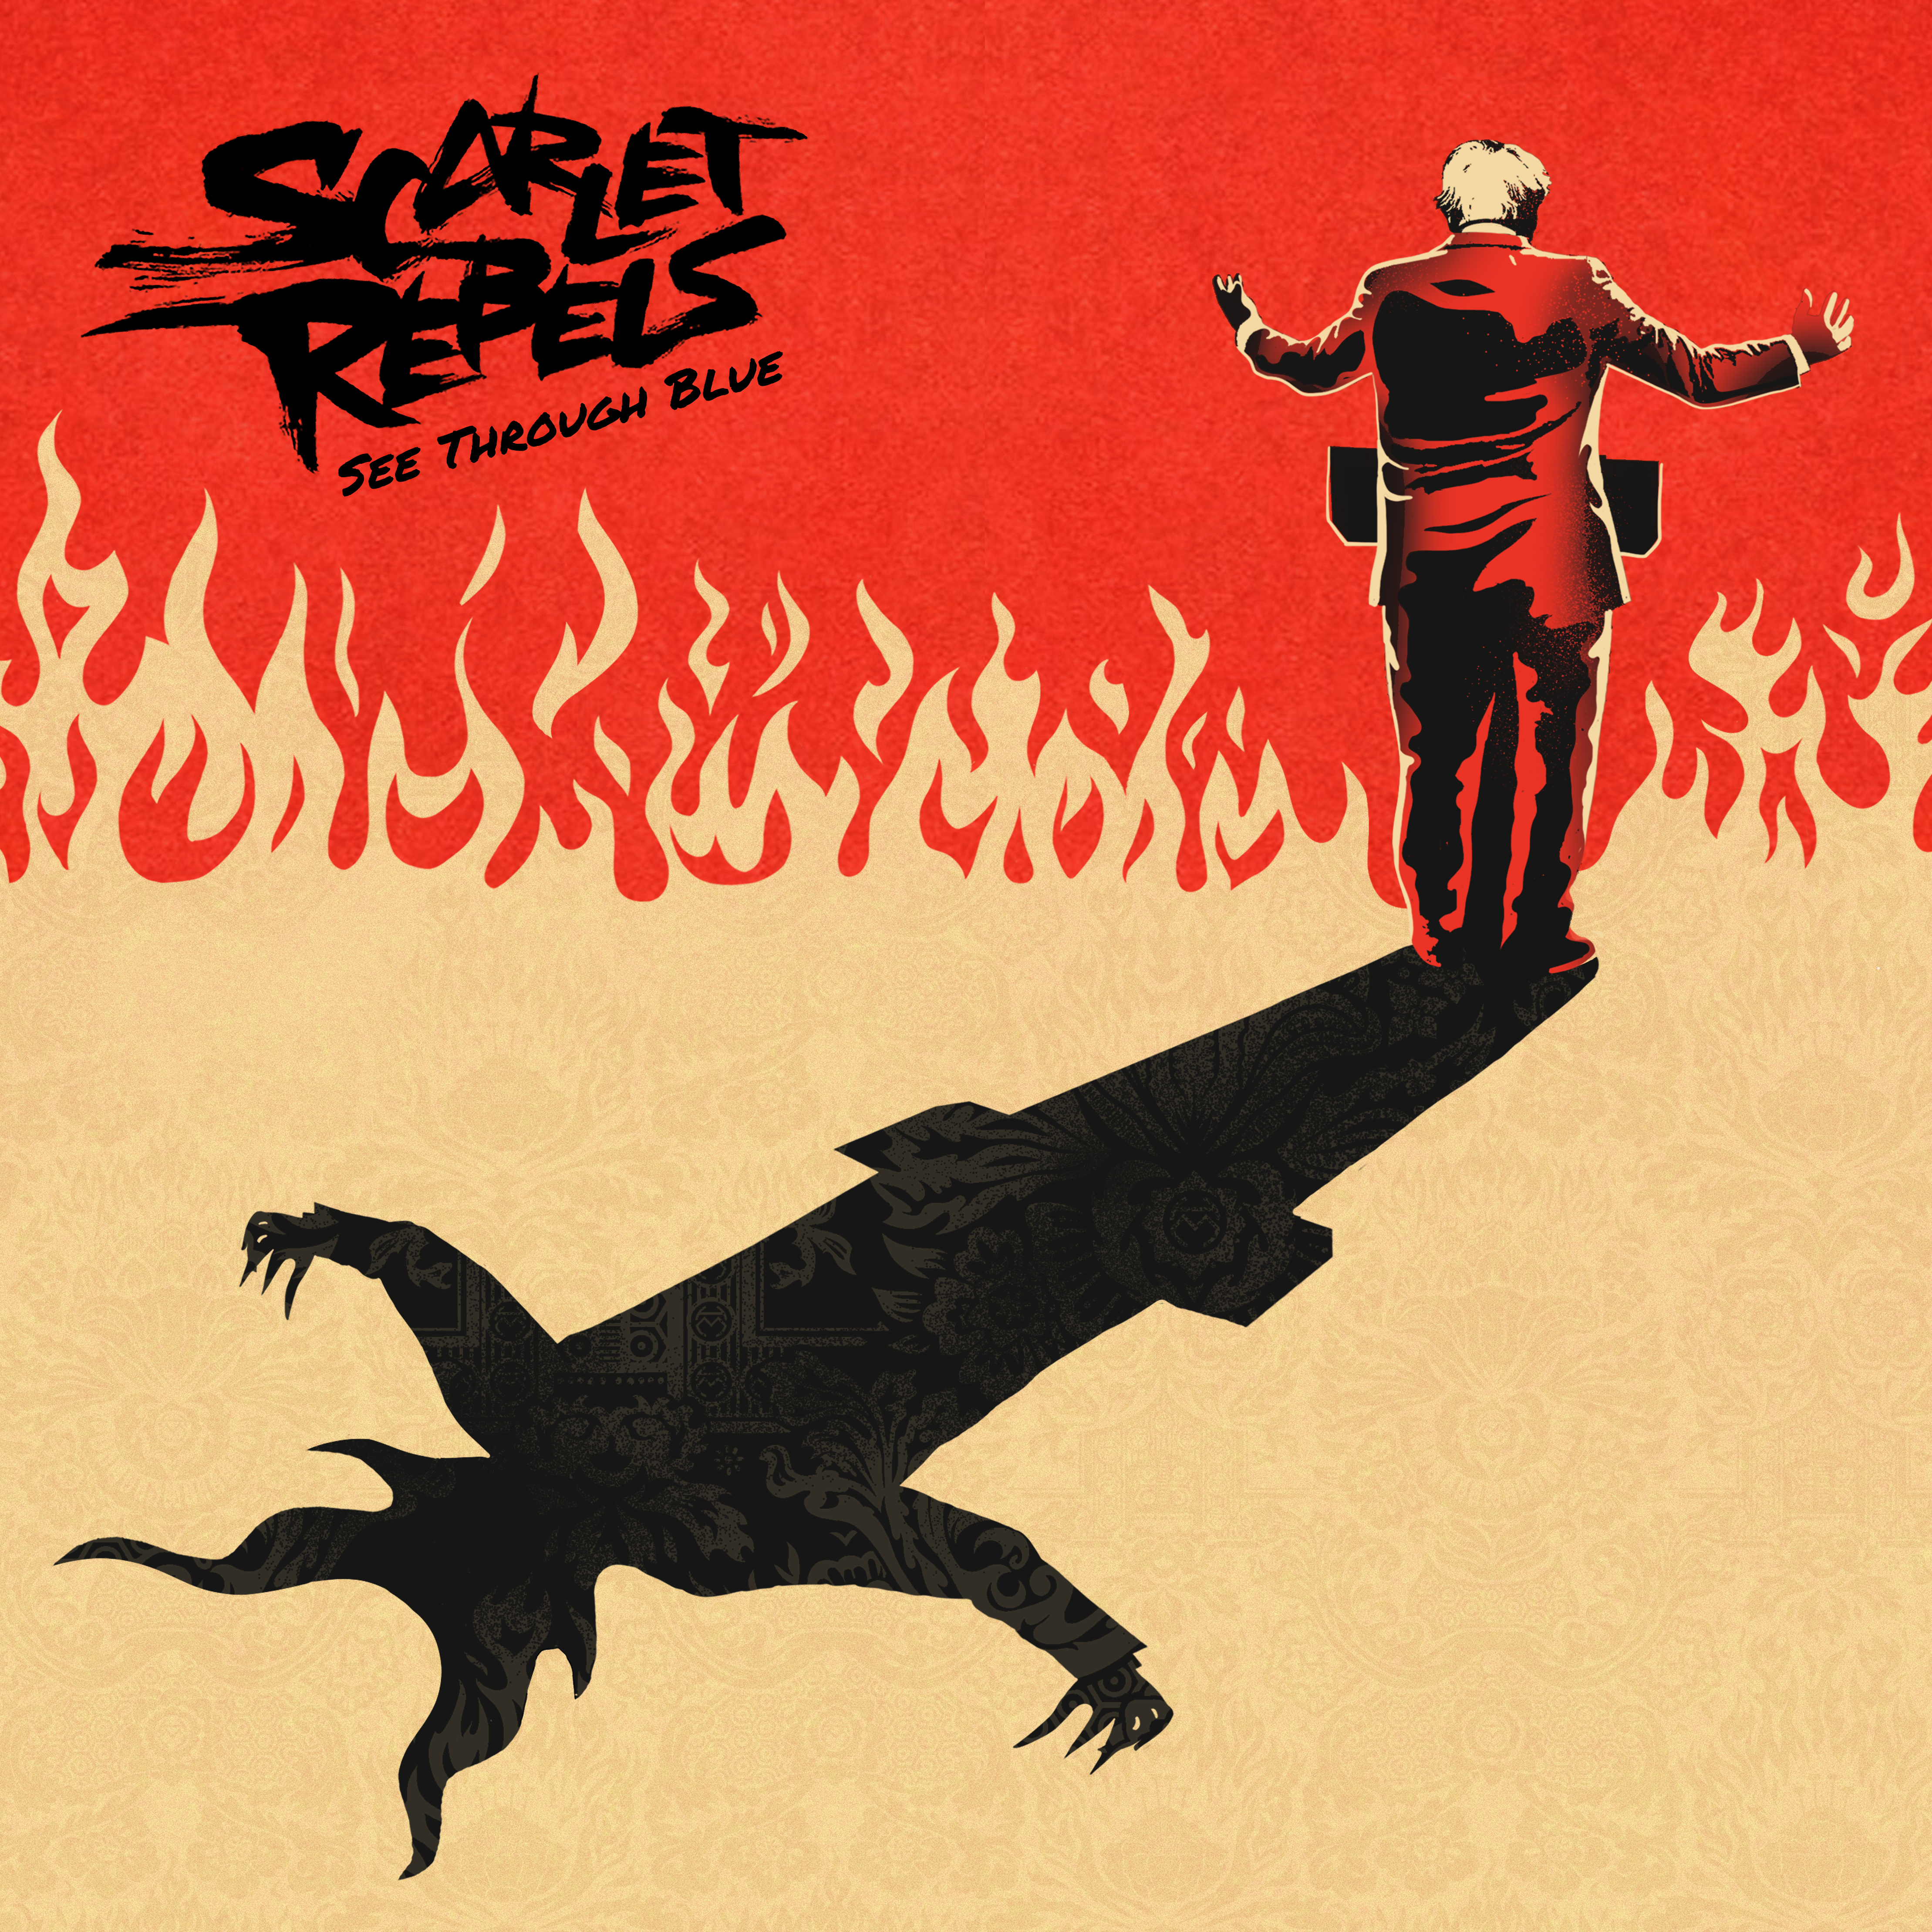 Scarlet Rebels See Through Blue (Vinyl) 12" Album - Afbeelding 1 van 1